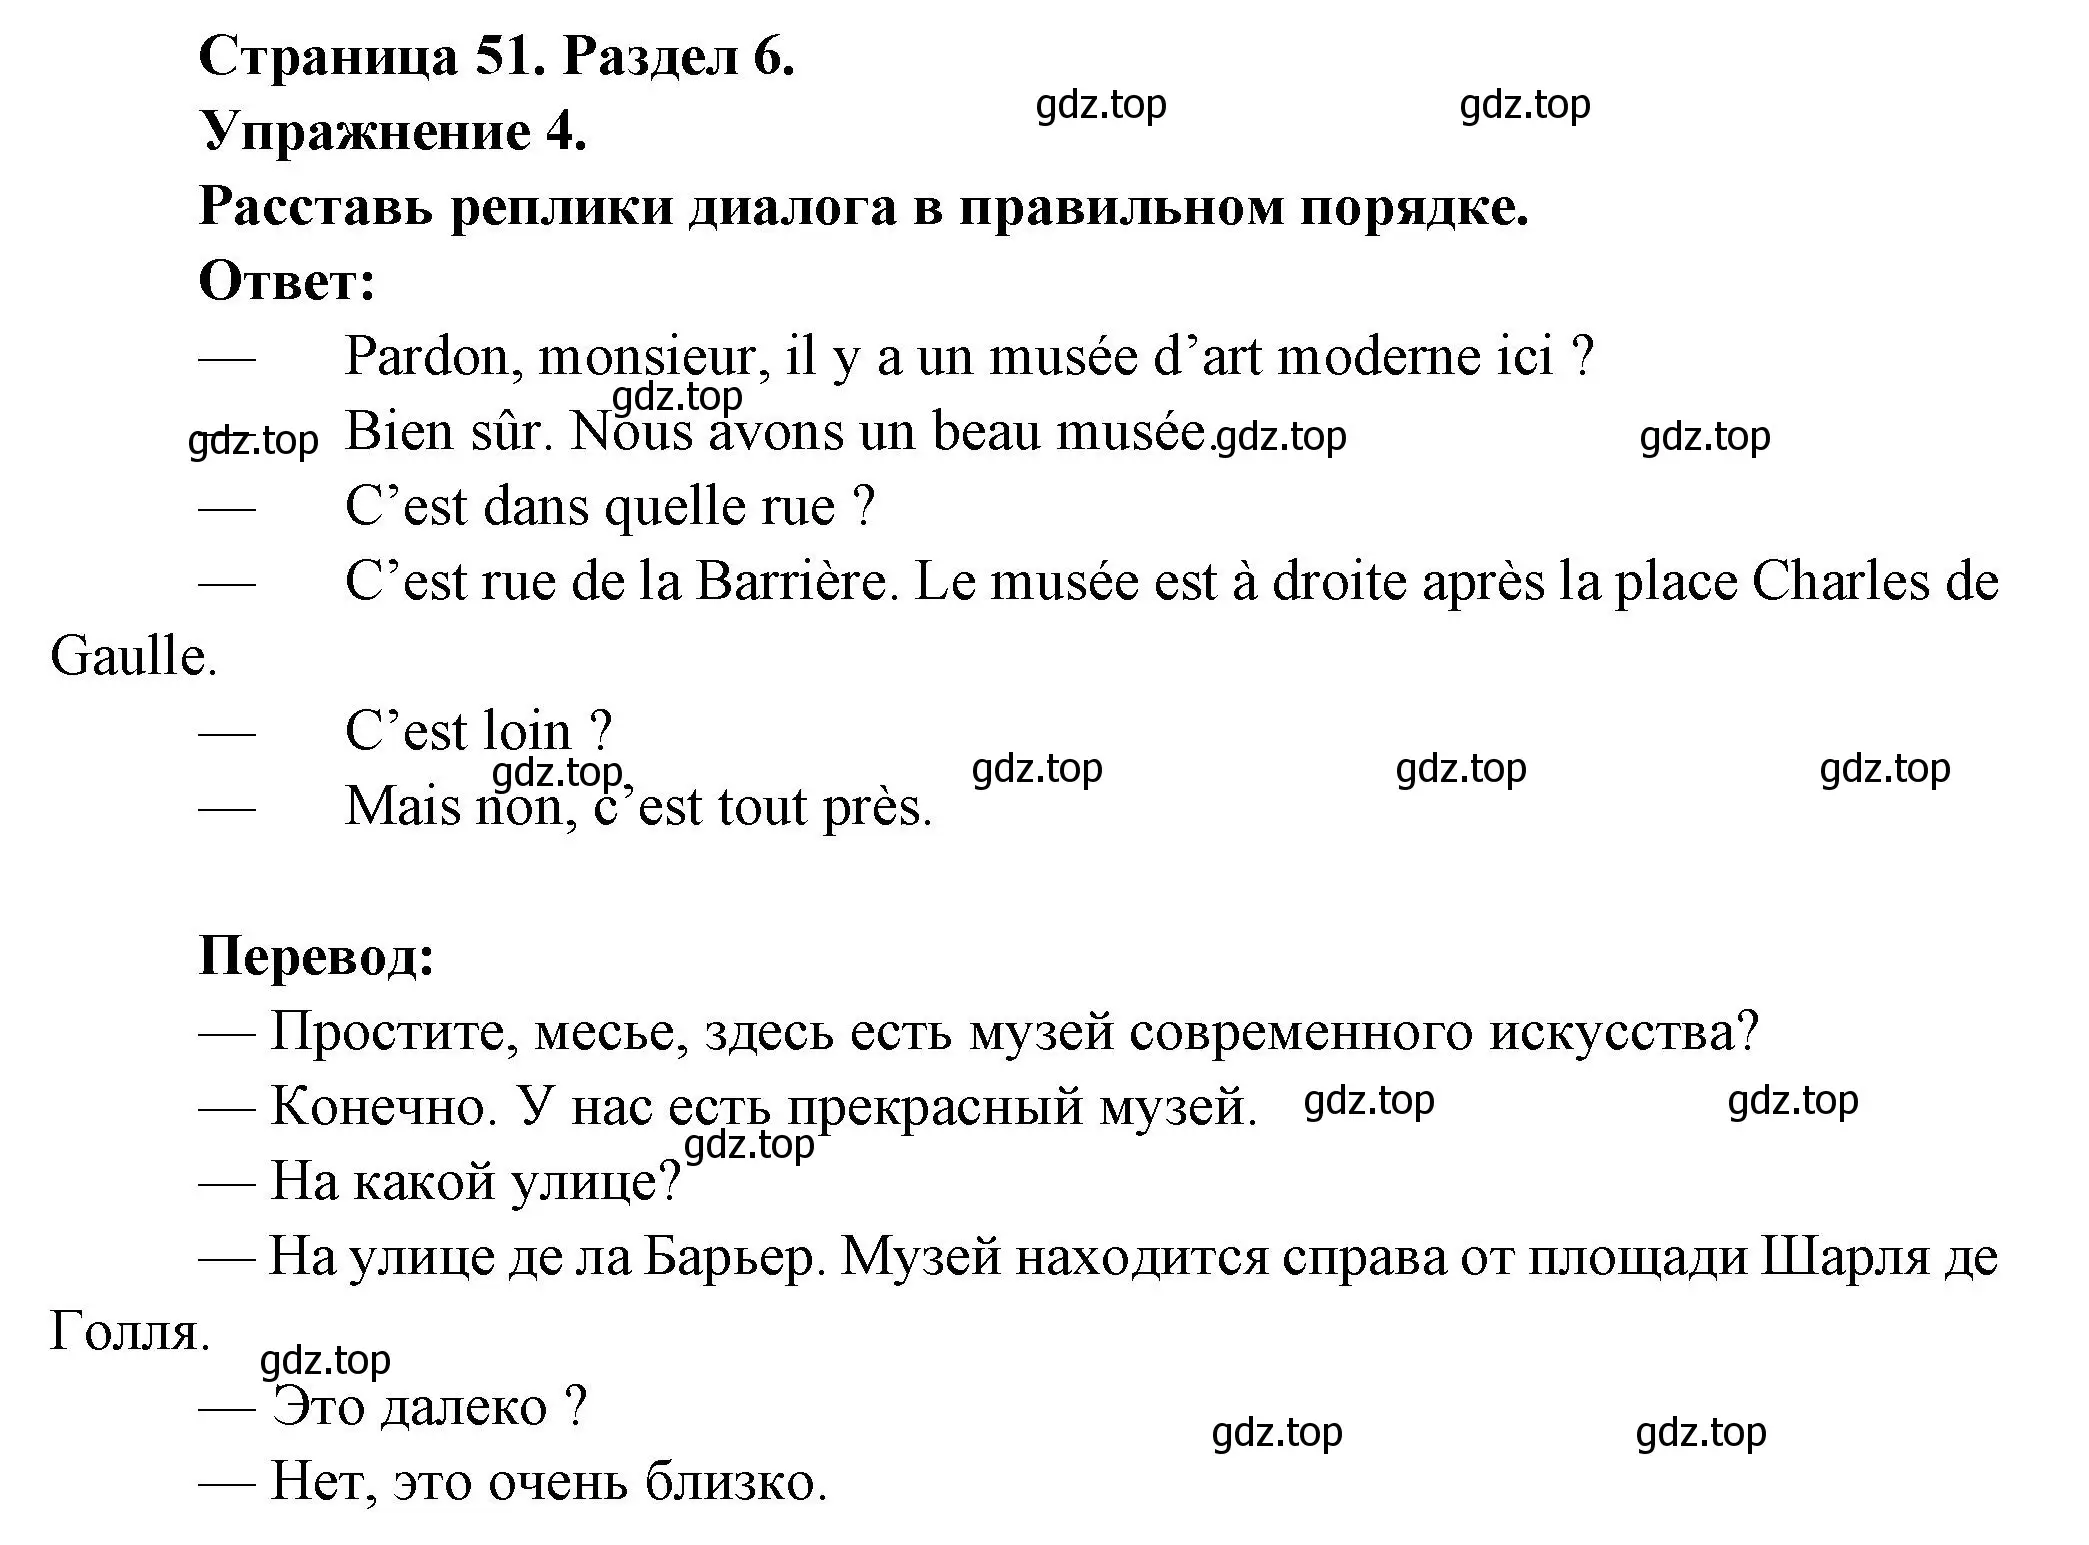 Решение номер 4 (страница 51) гдз по французскому языку 5 класс Береговская, Белосельская, учебник 2 часть